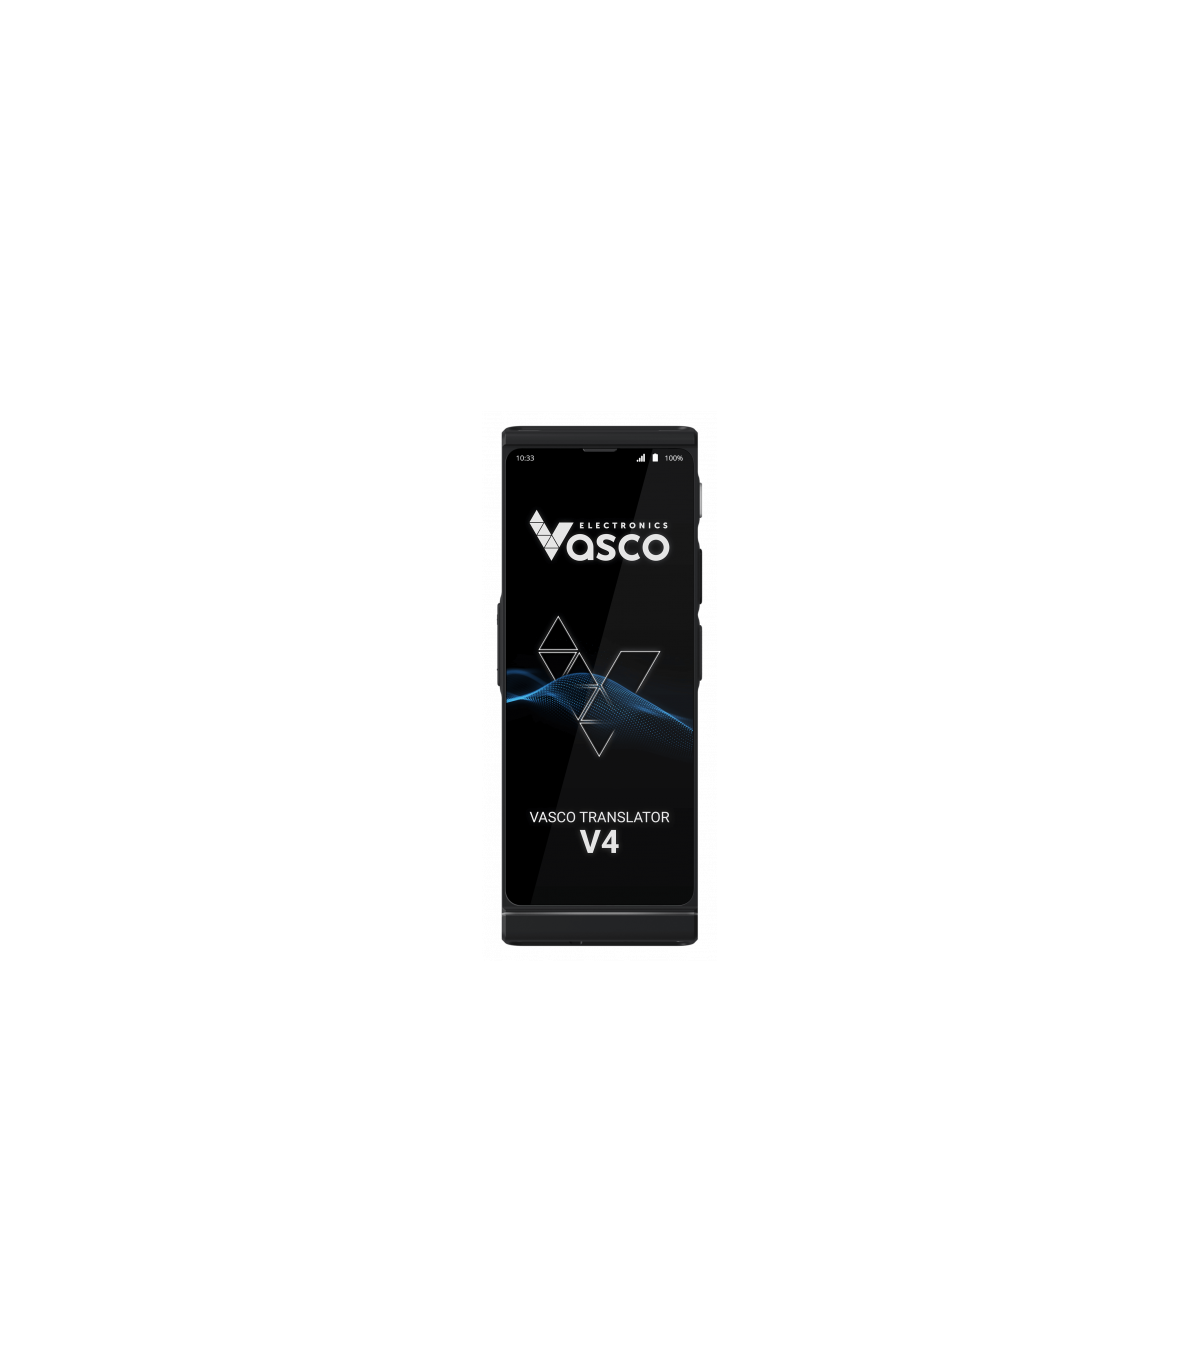 TRADUCTOR VASCO V4, disponible en Fusa Bilbao